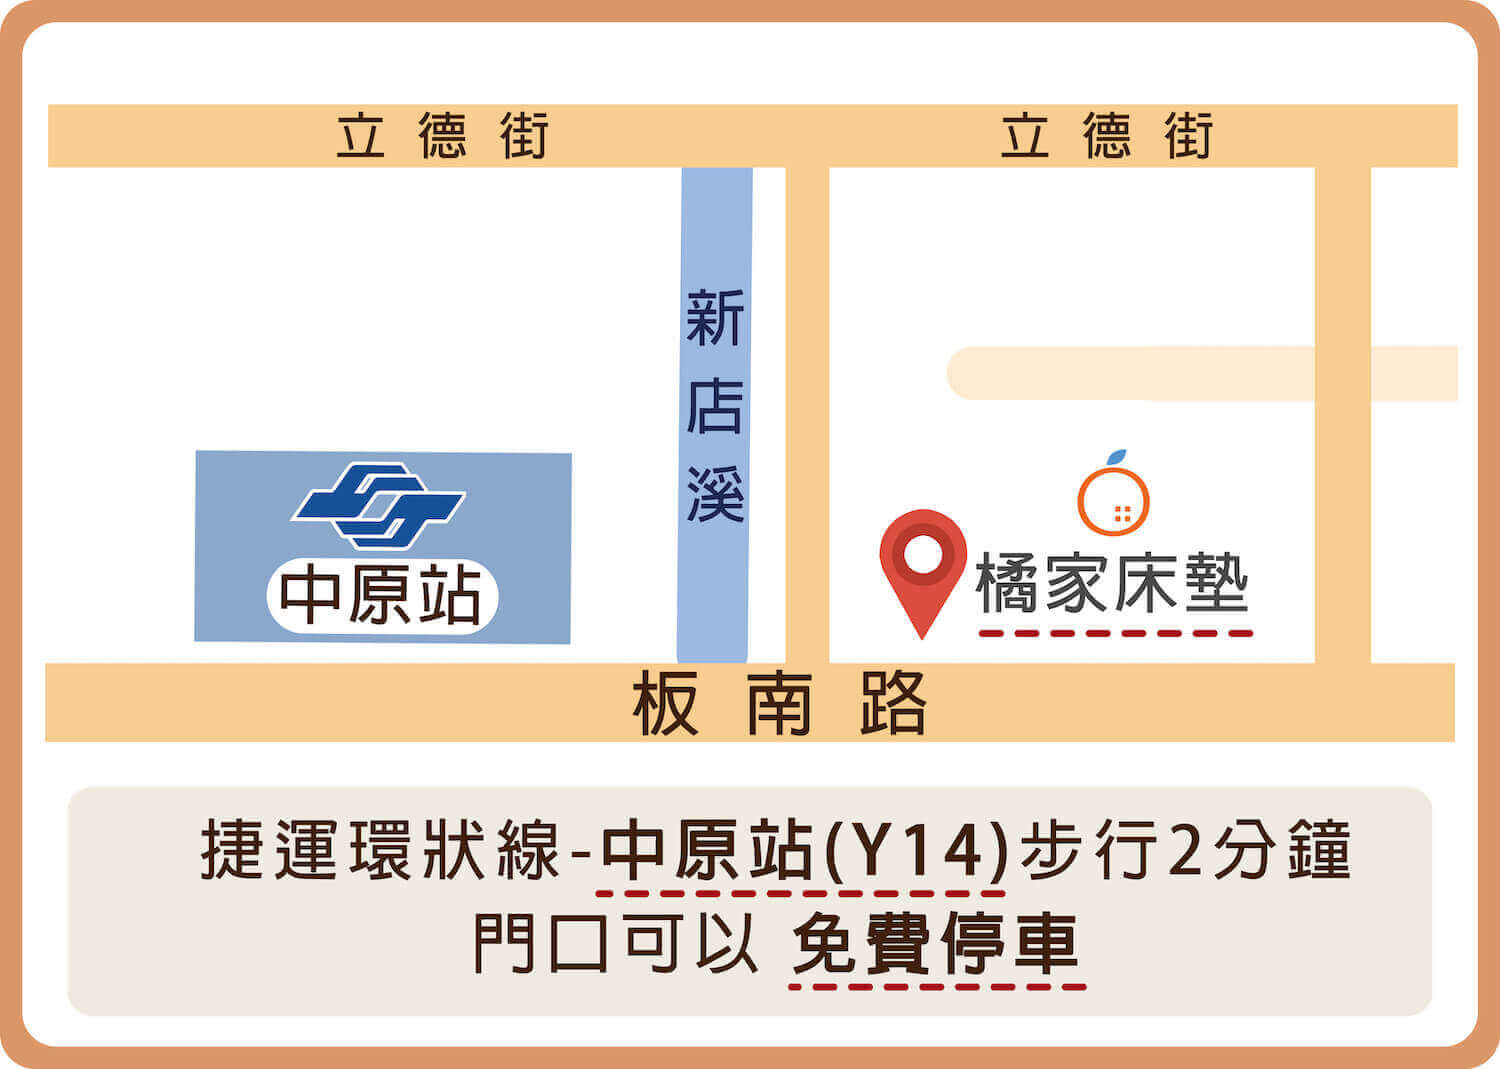 中和床墊地圖交通資訊：台北捷運環狀線中原站Y14步行2分鐘，門口可以免費停車